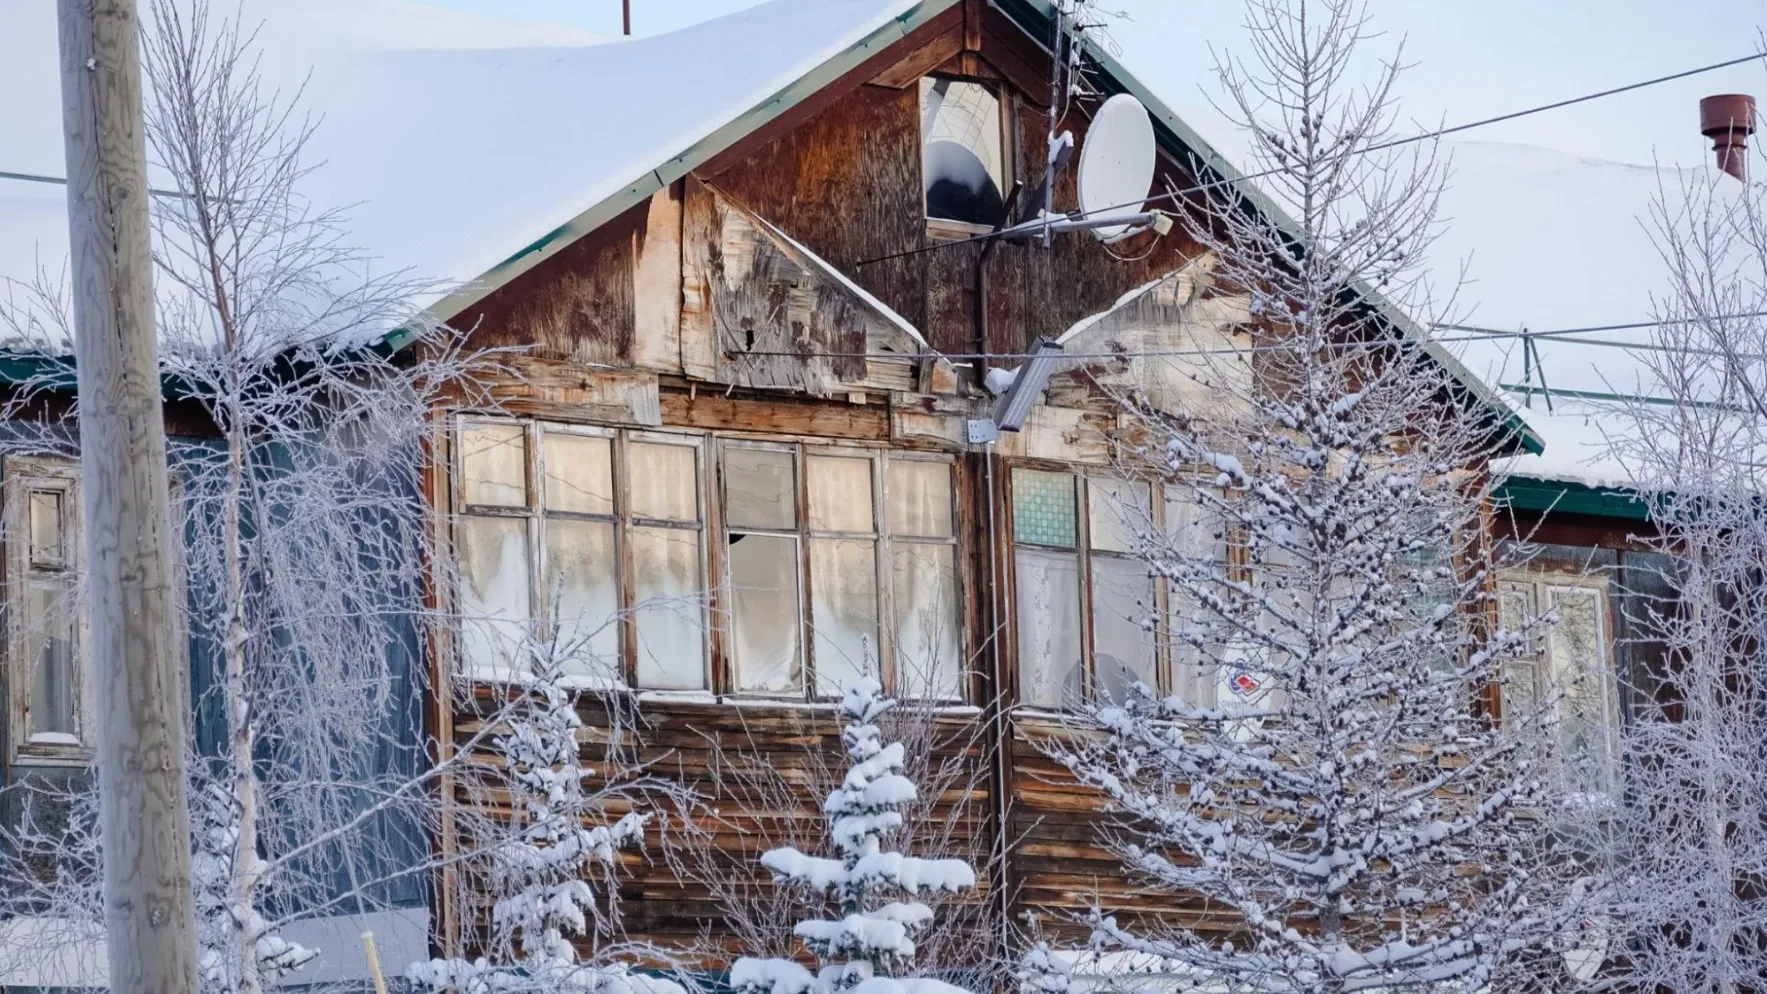 Дом в деревянном исполнении в мороз.  Фото: Юлия Чудинова / «Ямал-Медиа»